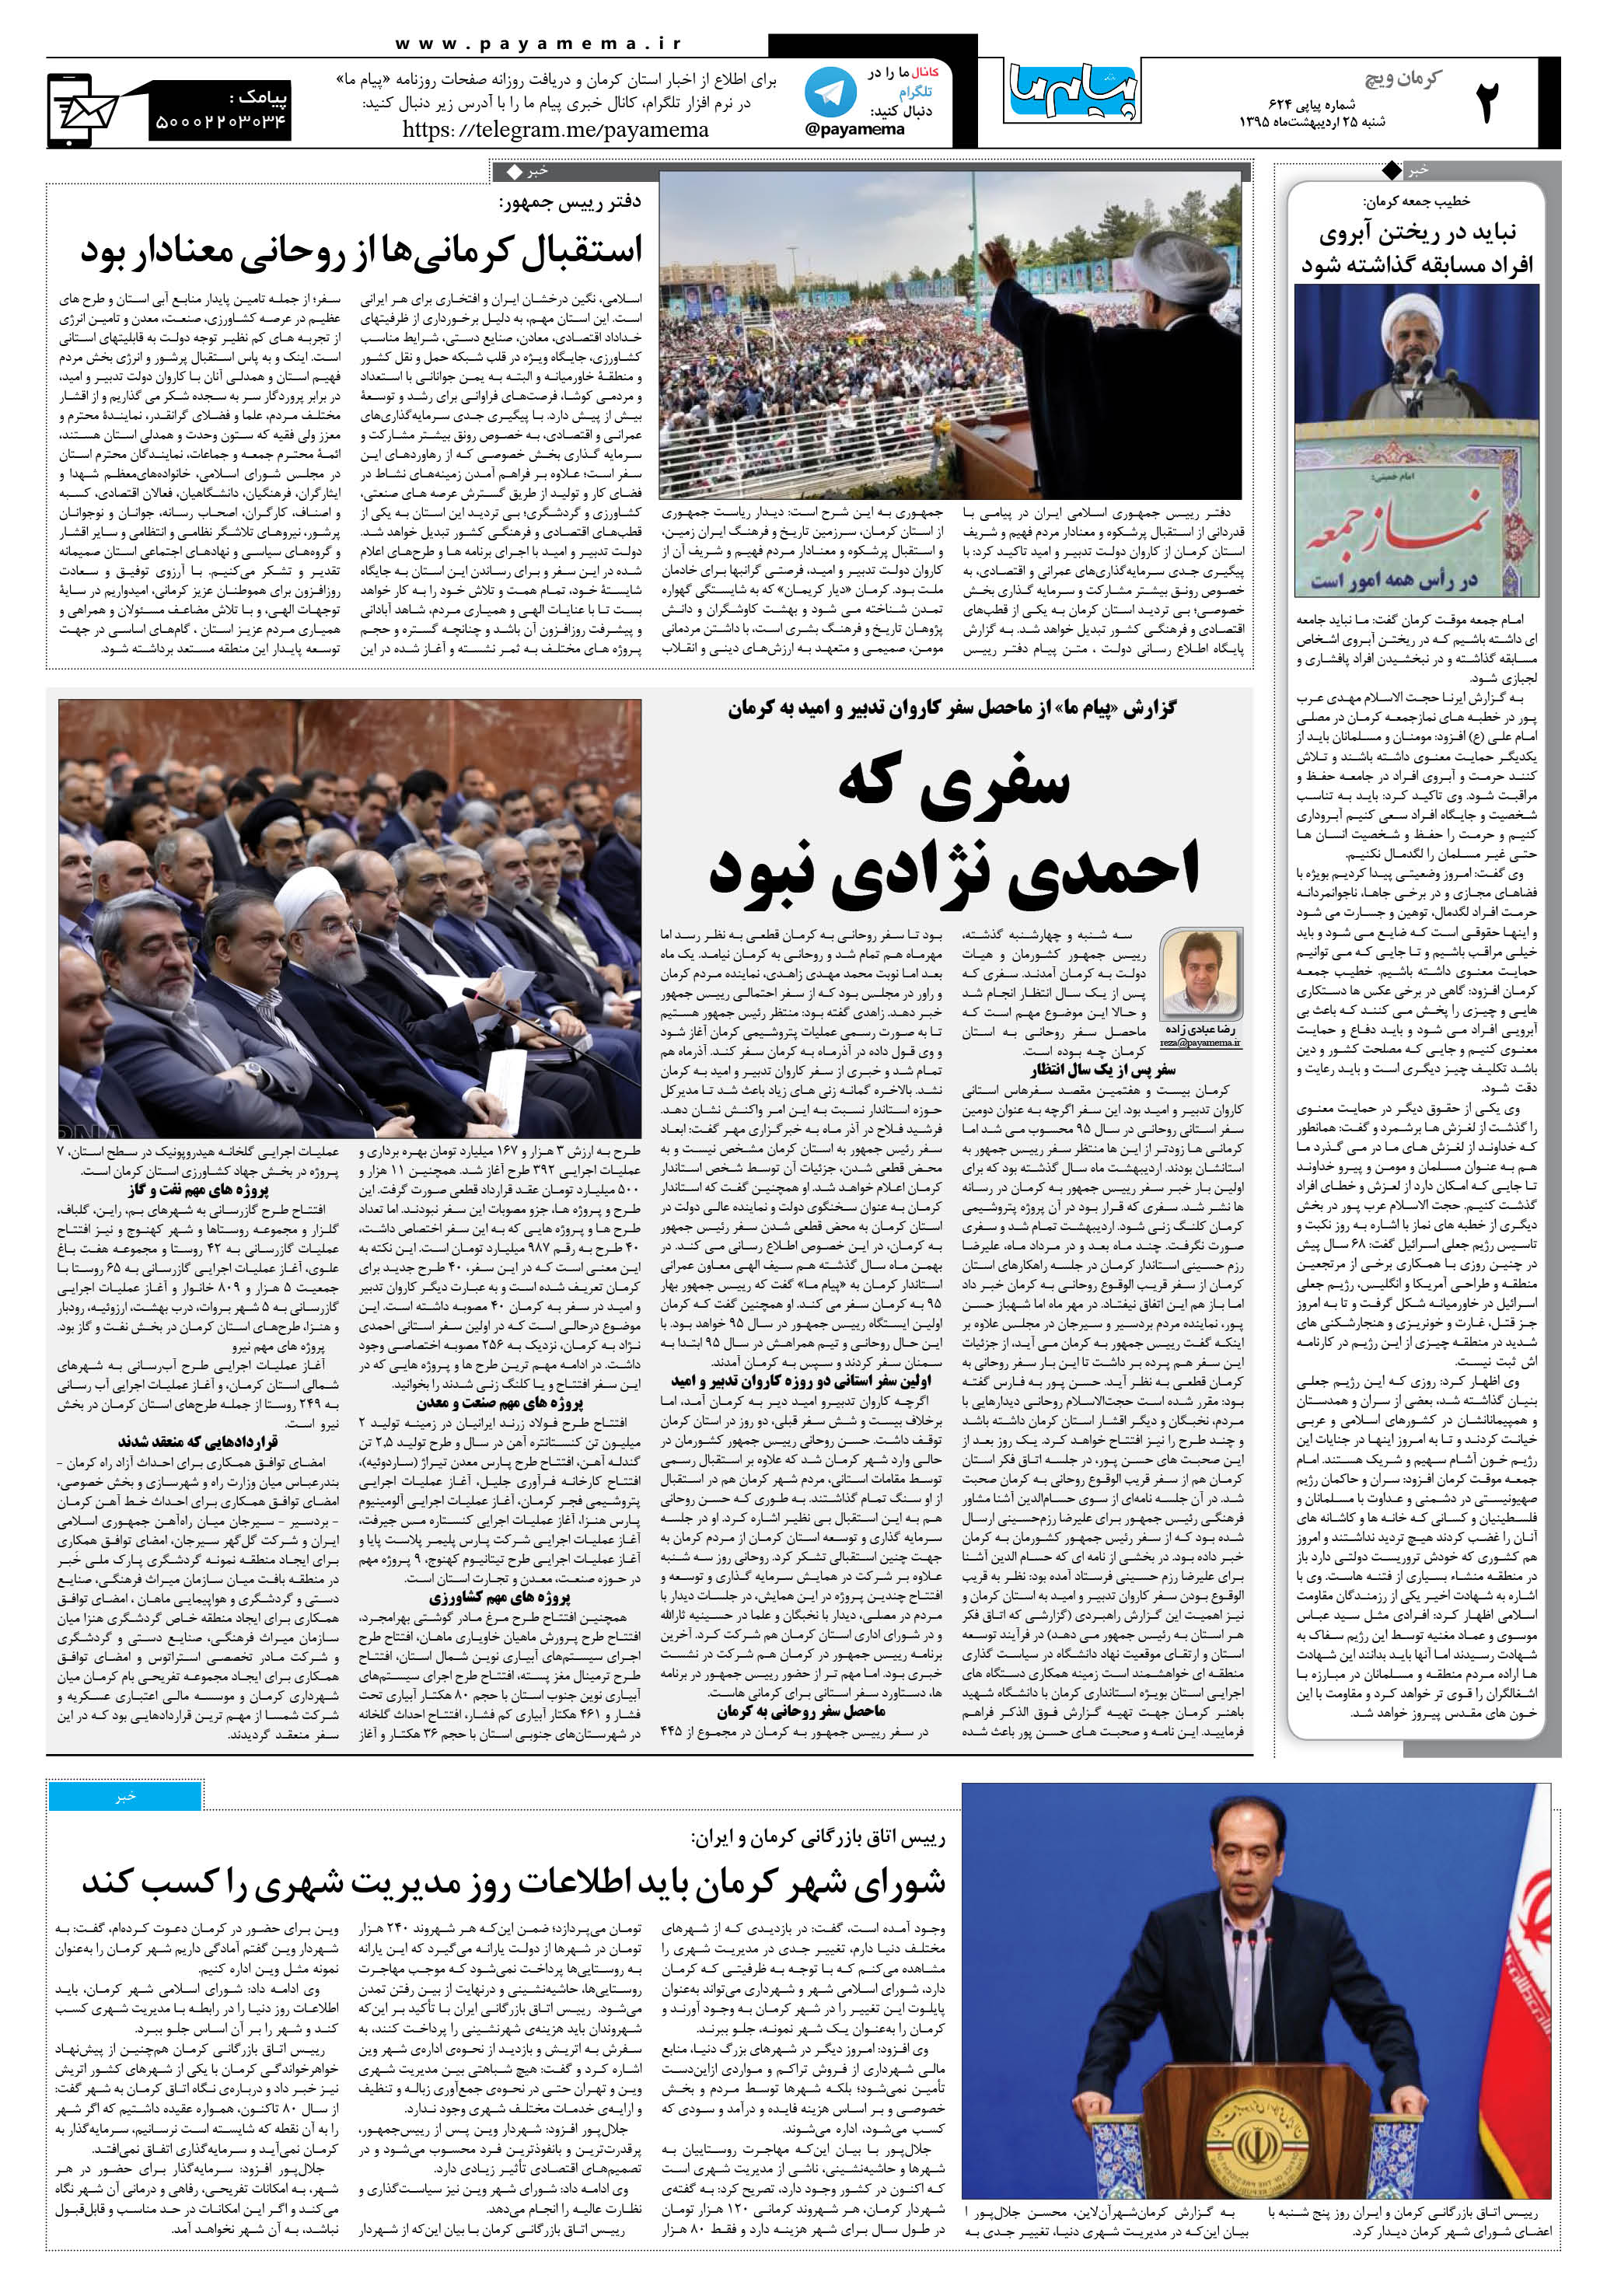 صفحه کرمان ویج شماره 624 روزنامه پیام ما